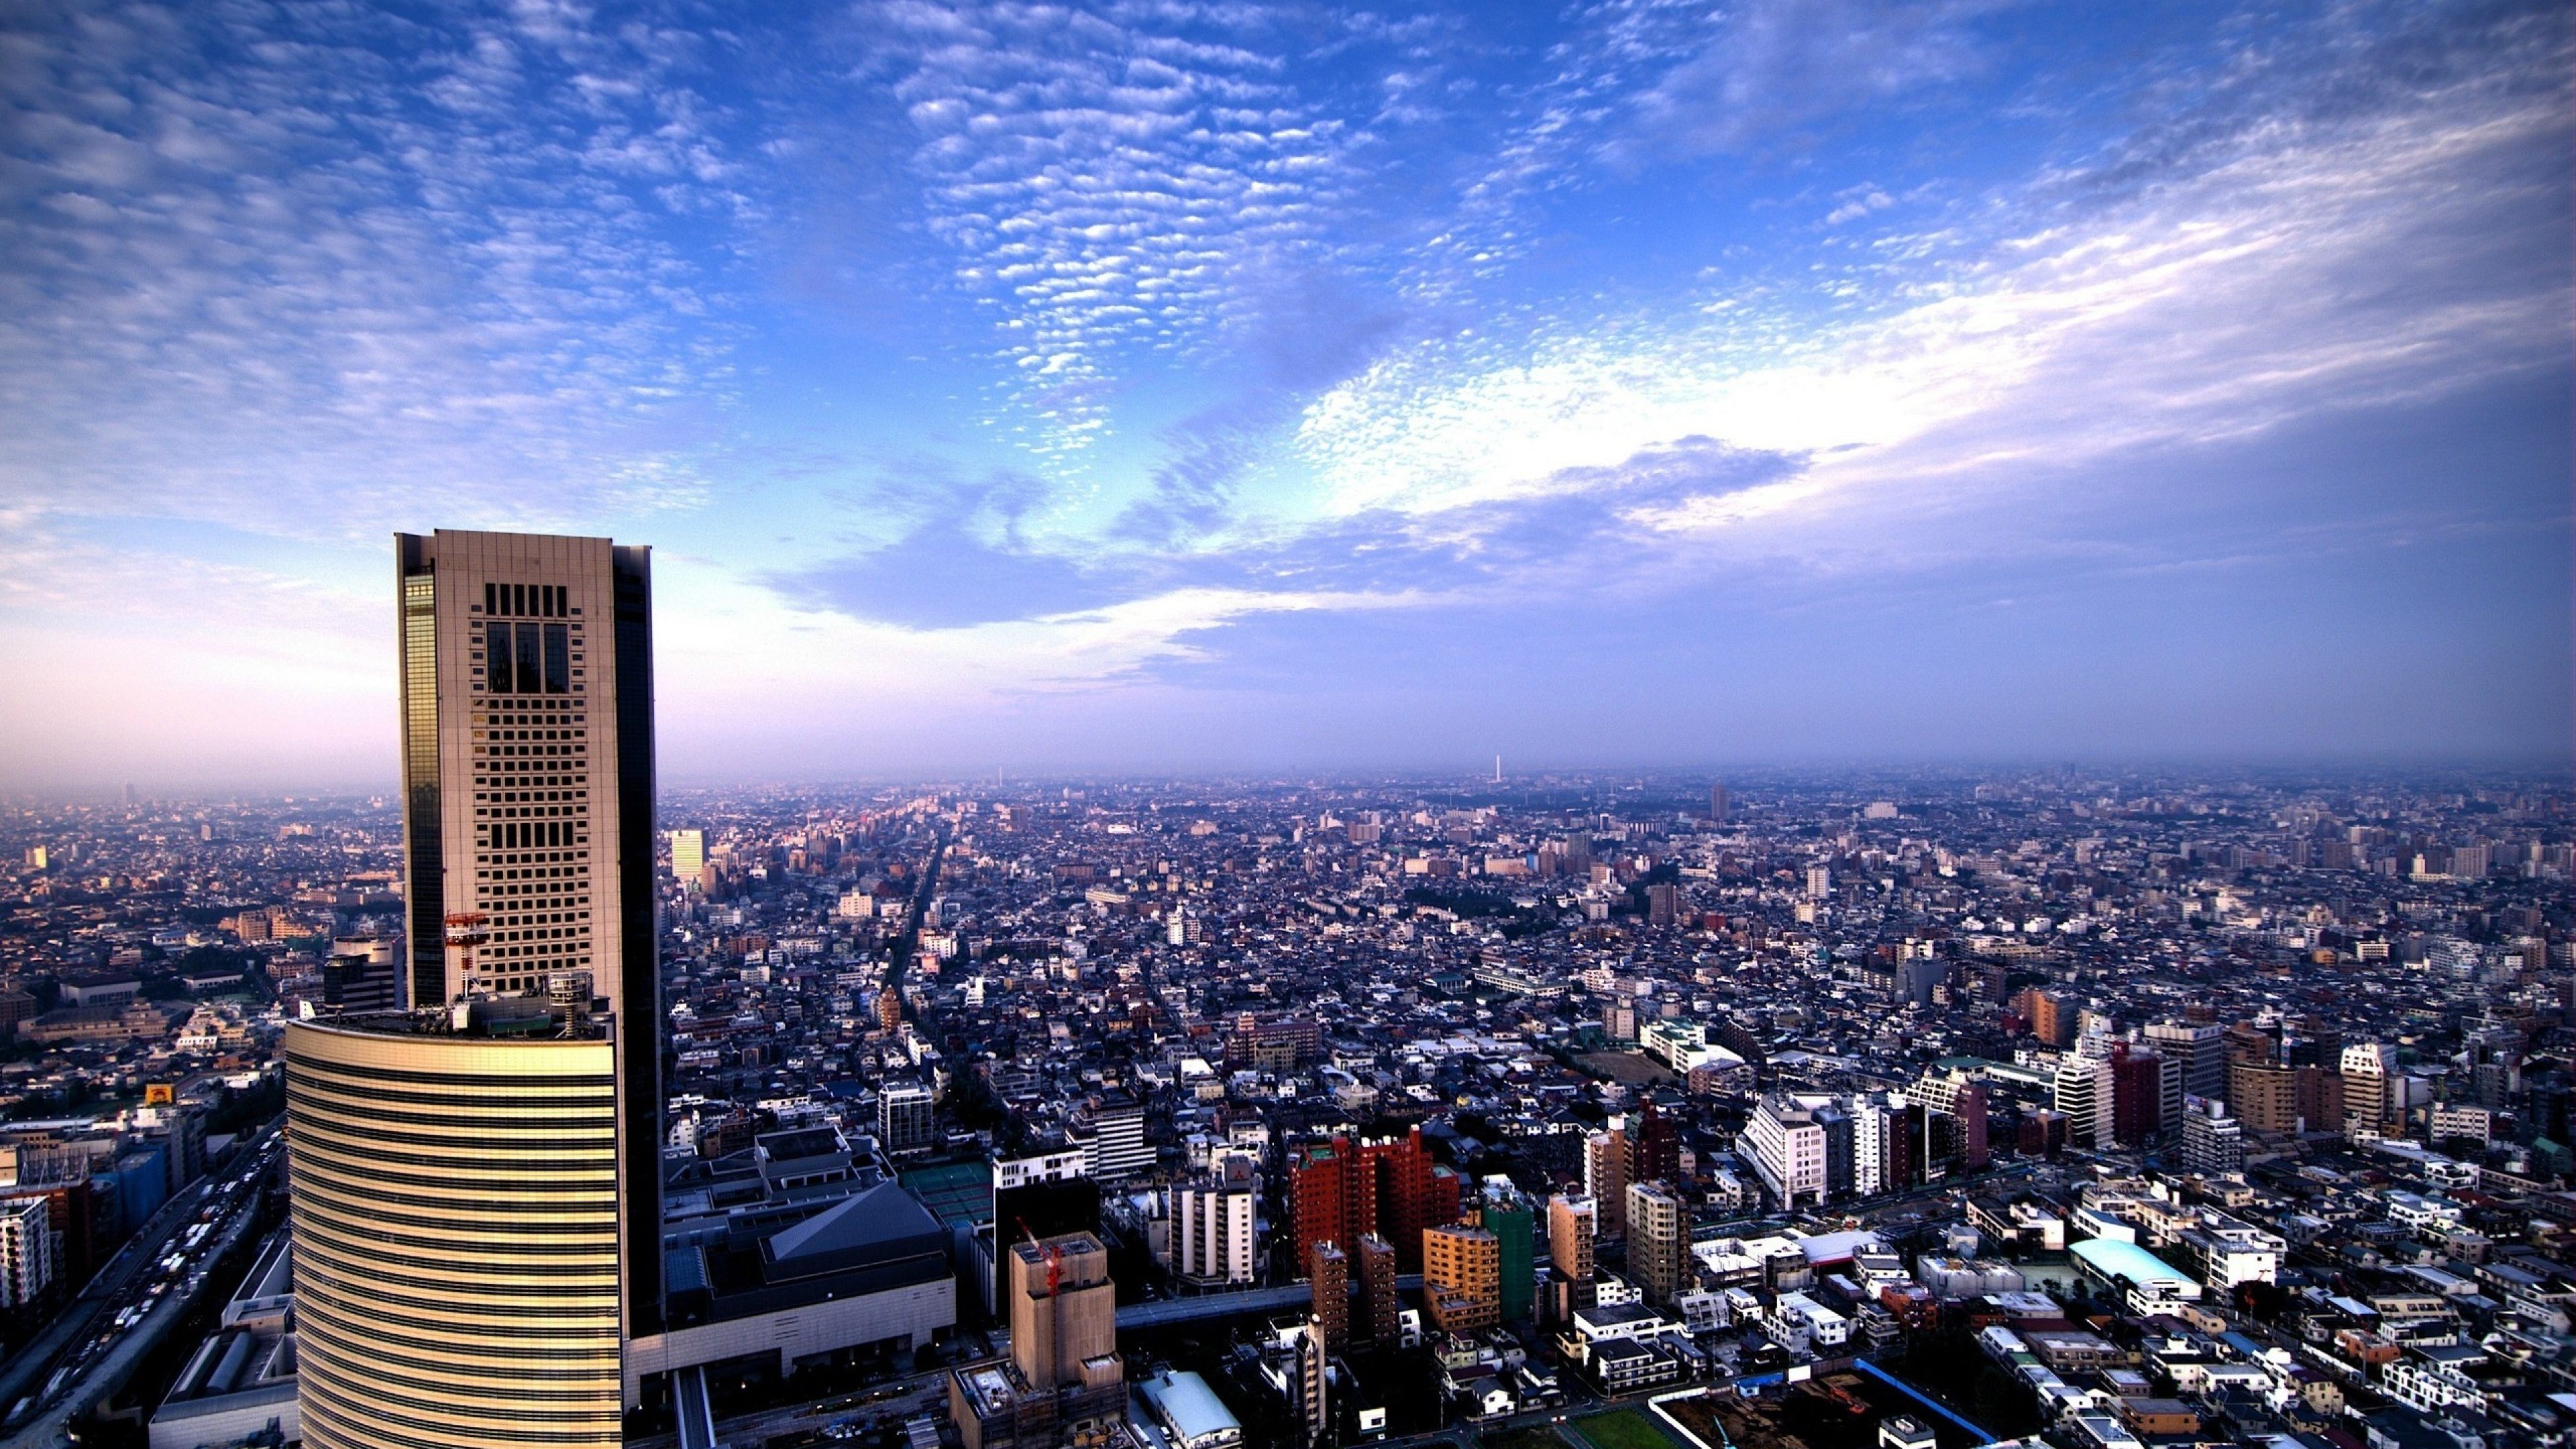 fond d'écran tokyo 4k,paysage urbain,ville,zone métropolitaine,zone urbaine,gratte ciel